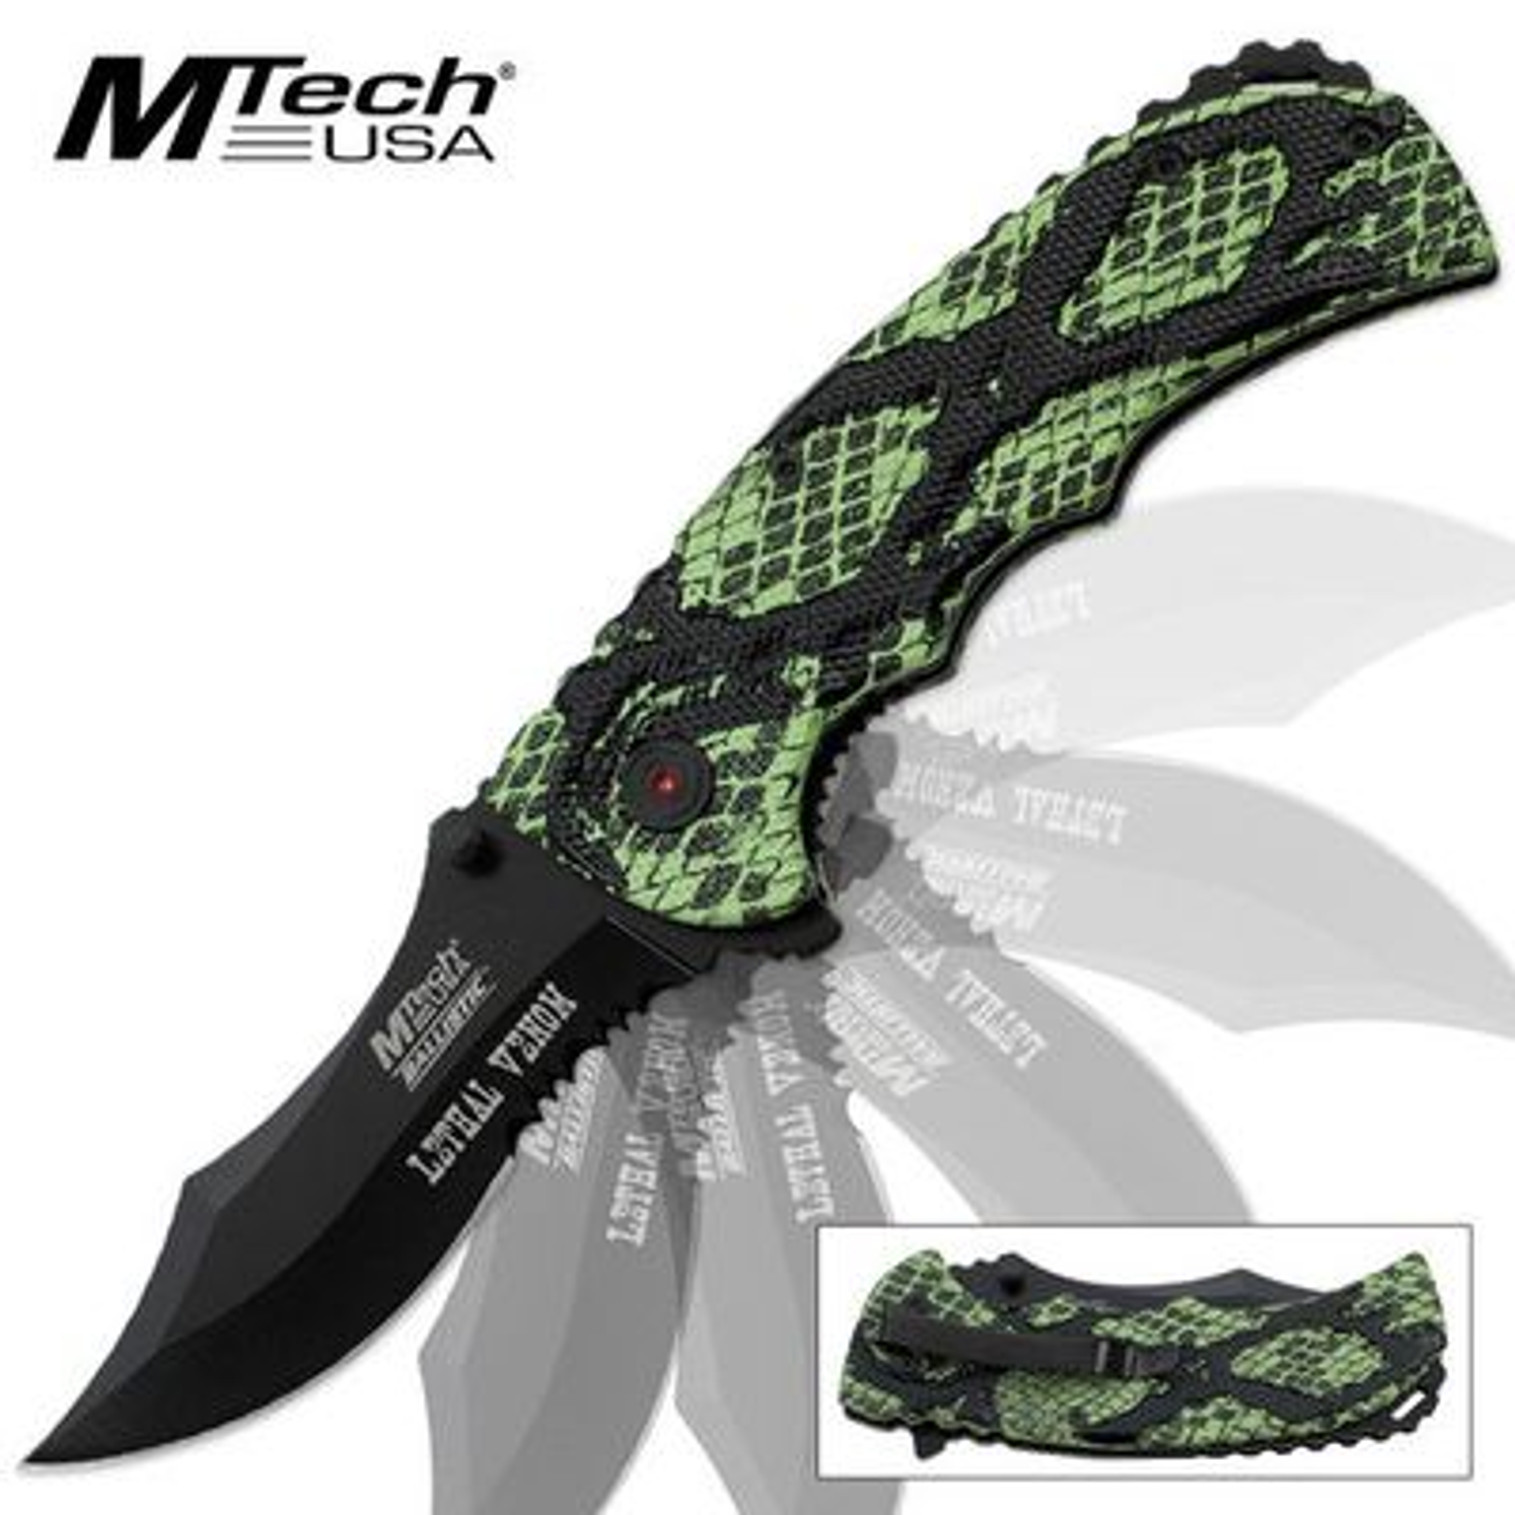 MTech Ballistic Lethal Venom Assisted Open Pocket Knife Snake Skin Camo - Green